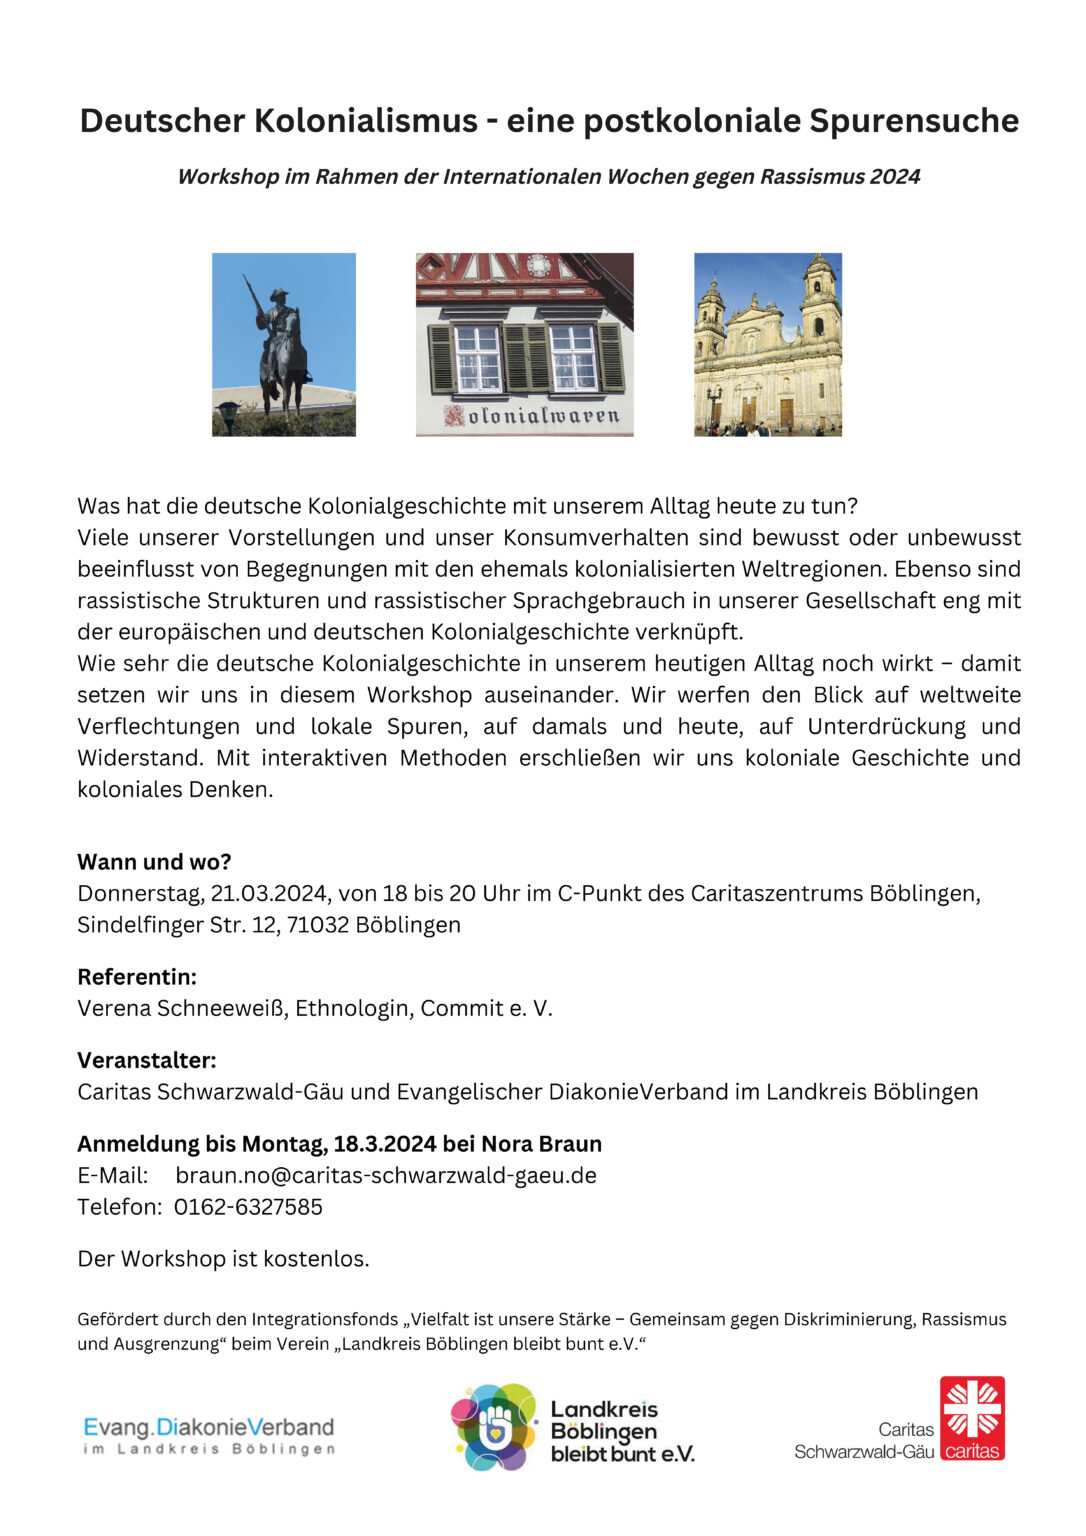 2402_CaDiFa_BB_IWGR24_Flyer Workshop Deutscher Kolonialismus